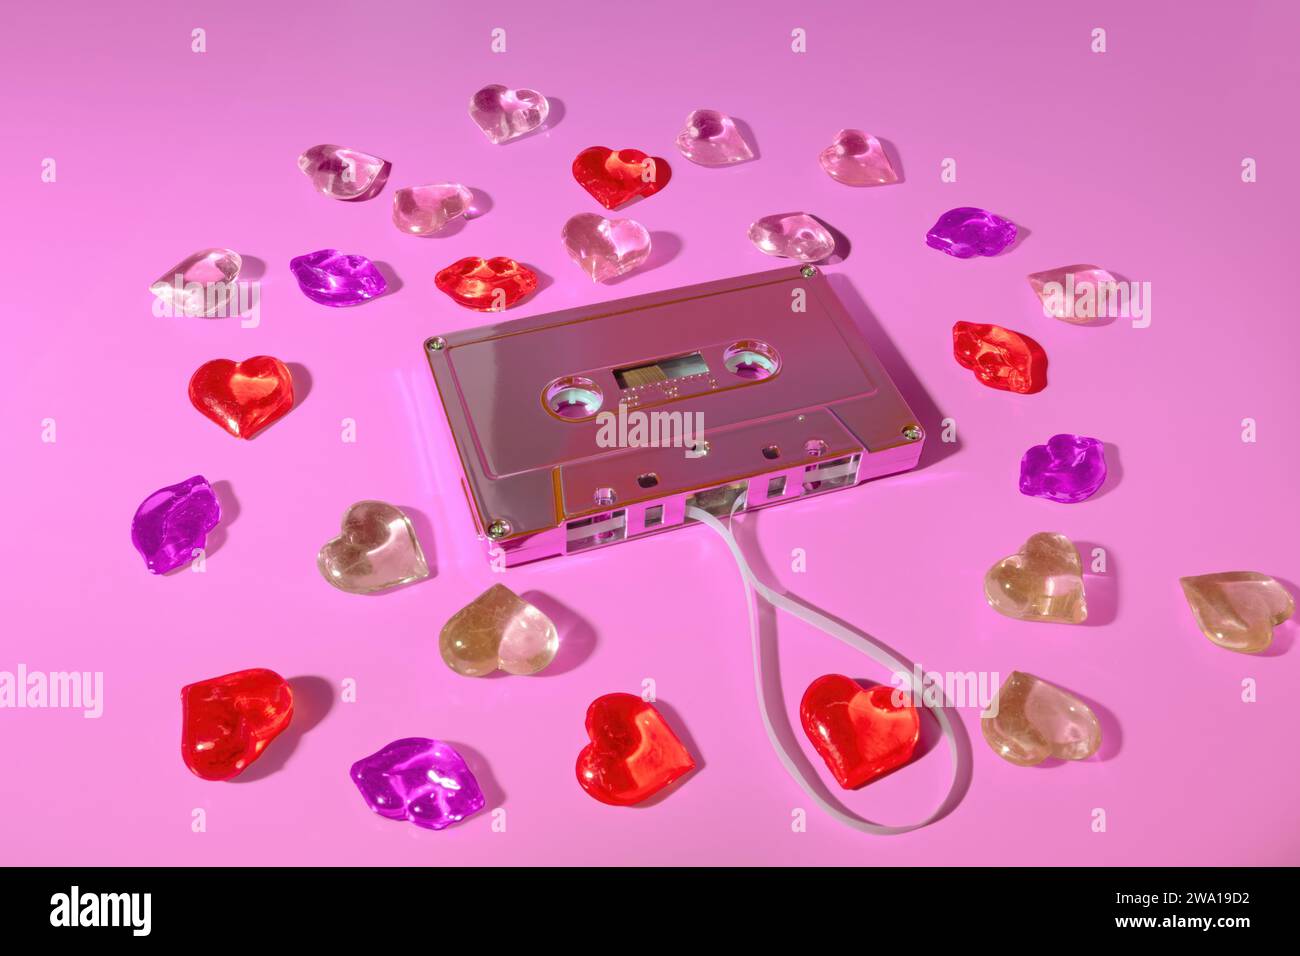 Concepto de lista de reproducción de canciones de amor, concepto de cinta de casete de música retro rodeado de labios y corazones rojos, mezcla de cinta, cinta mezclada de San Valentín Foto de stock